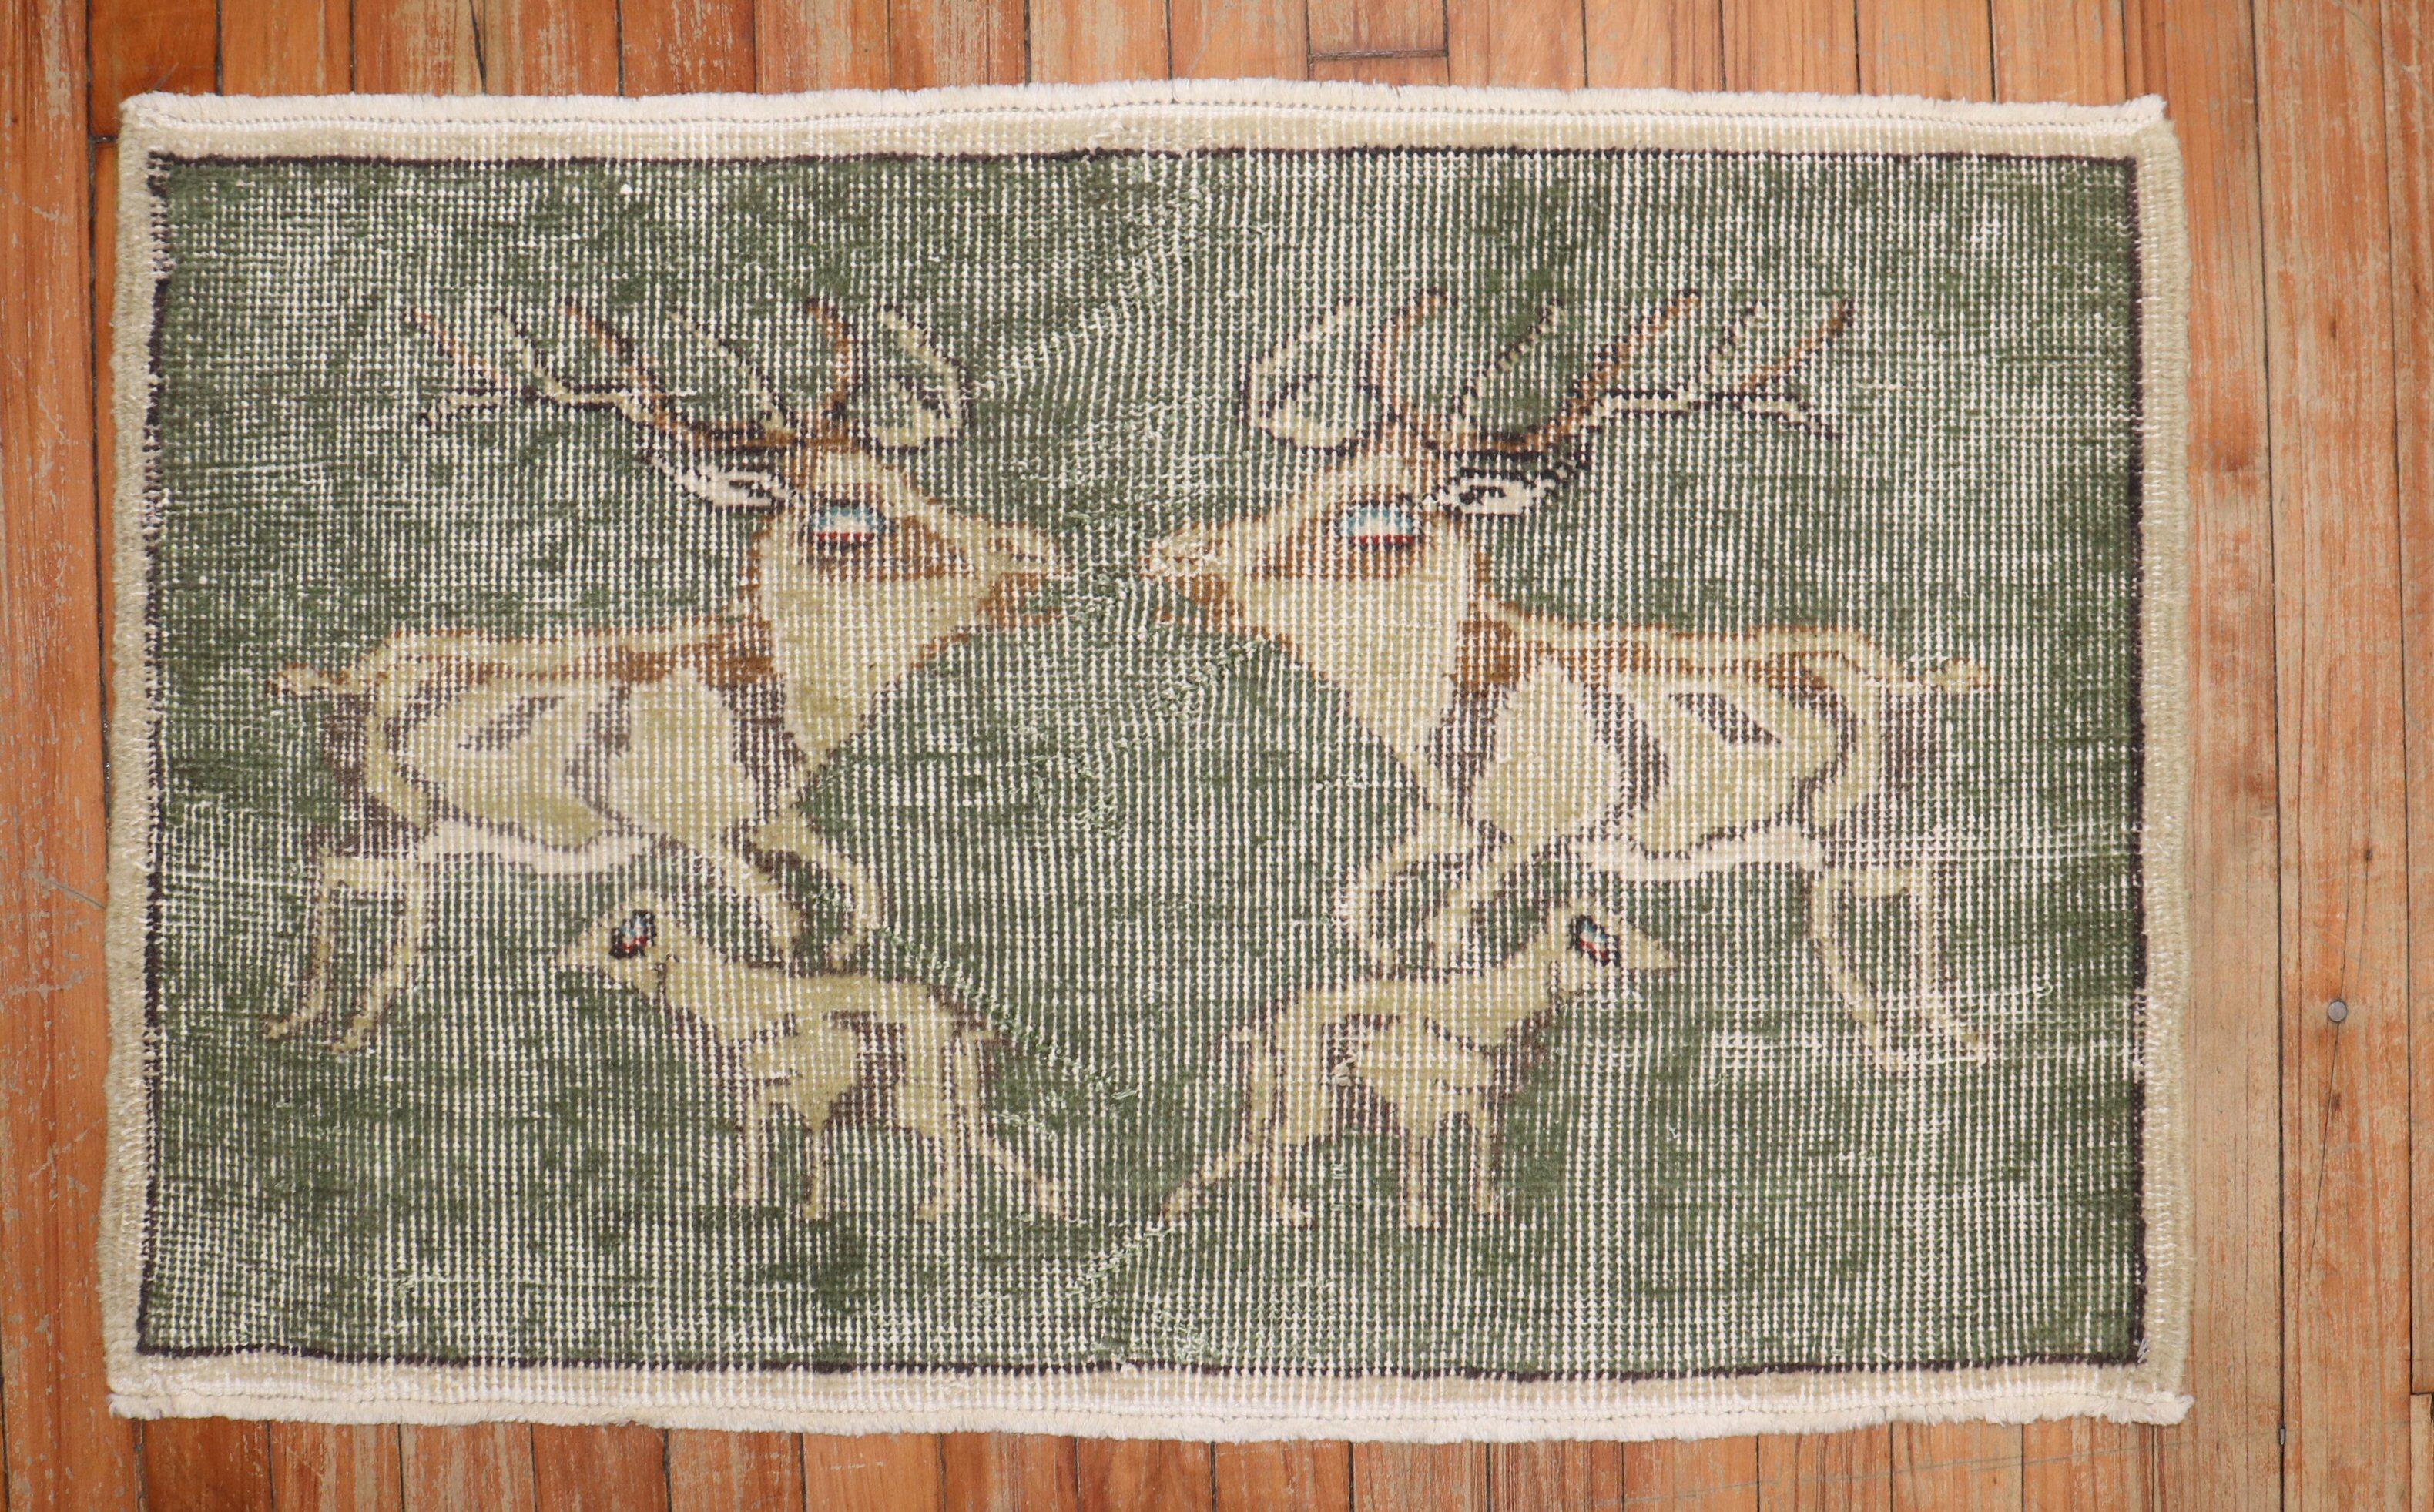 Einzigartiger handgeknüpfter türkisch-anatolischer Teppich mit 2 Hirschen und 2 anderen Tieren auf grünem Grund

Maße: 1'9